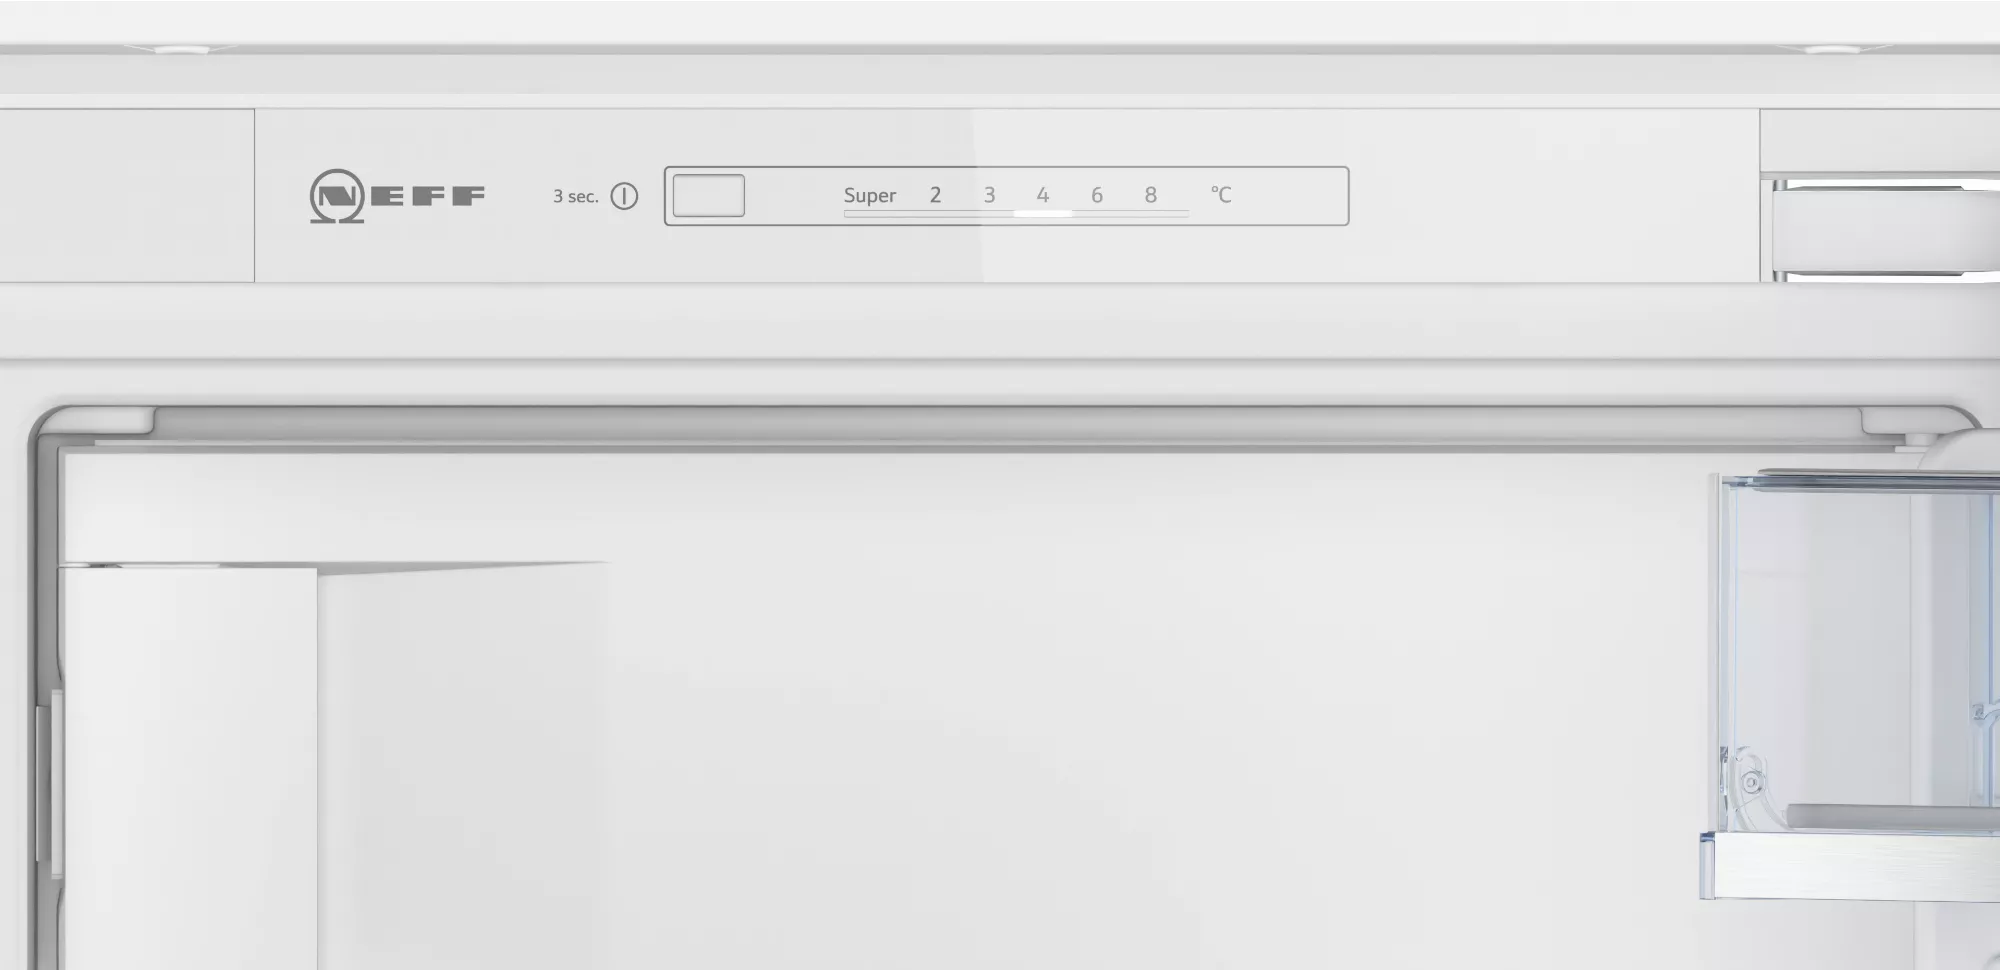 NEFF Einbau-Kühlschrank, KI2422FE0,  122,1 cm hoch, 54,1 cm breit, Gefrierfach